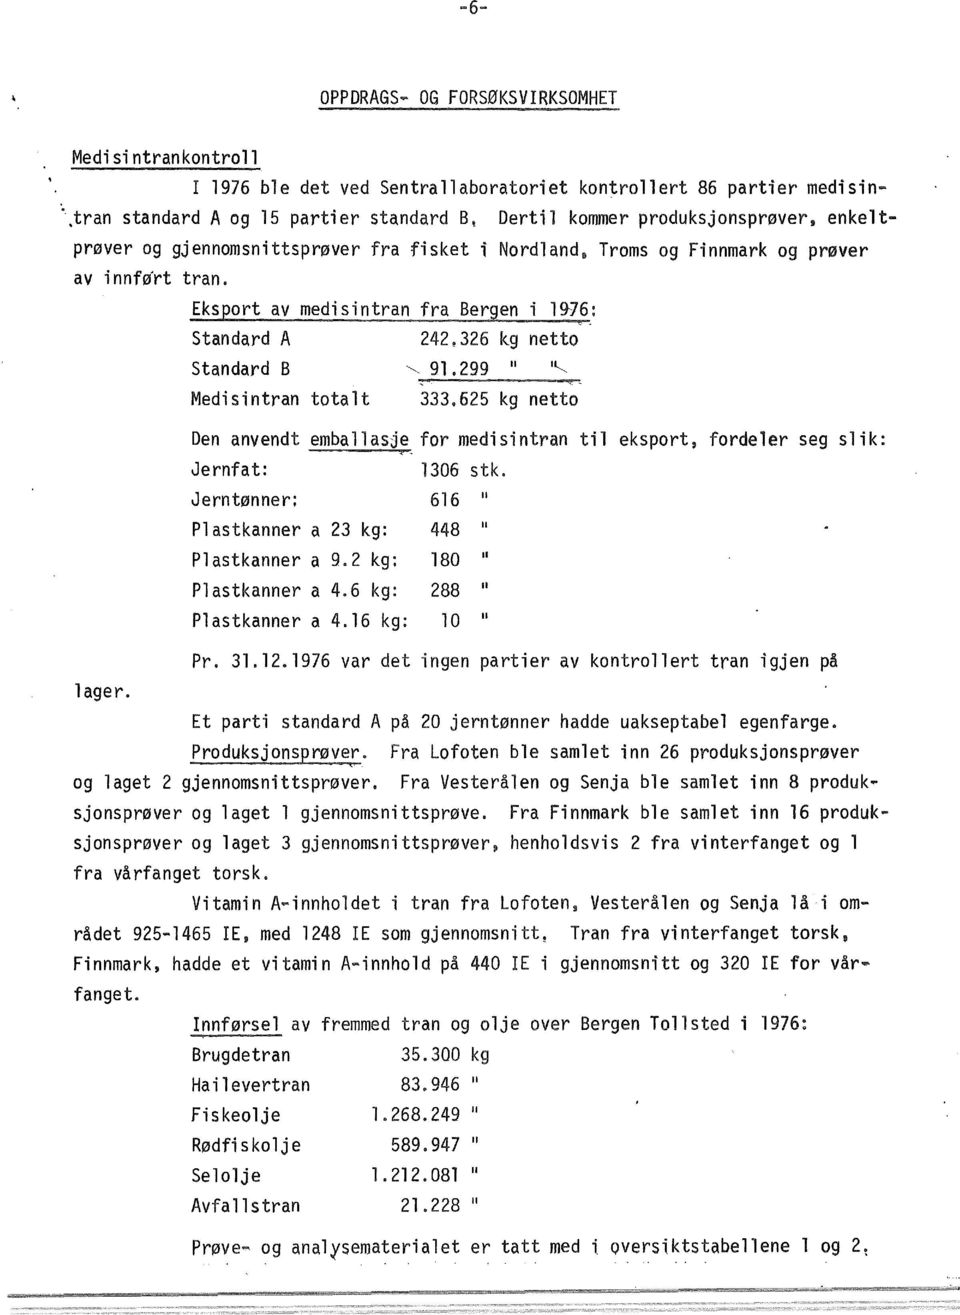 Eksport av medisintran fra Bergen i 1976: Standard A 242e326 kg netto Standard B 299 li ~ Medisintran totalt 333.